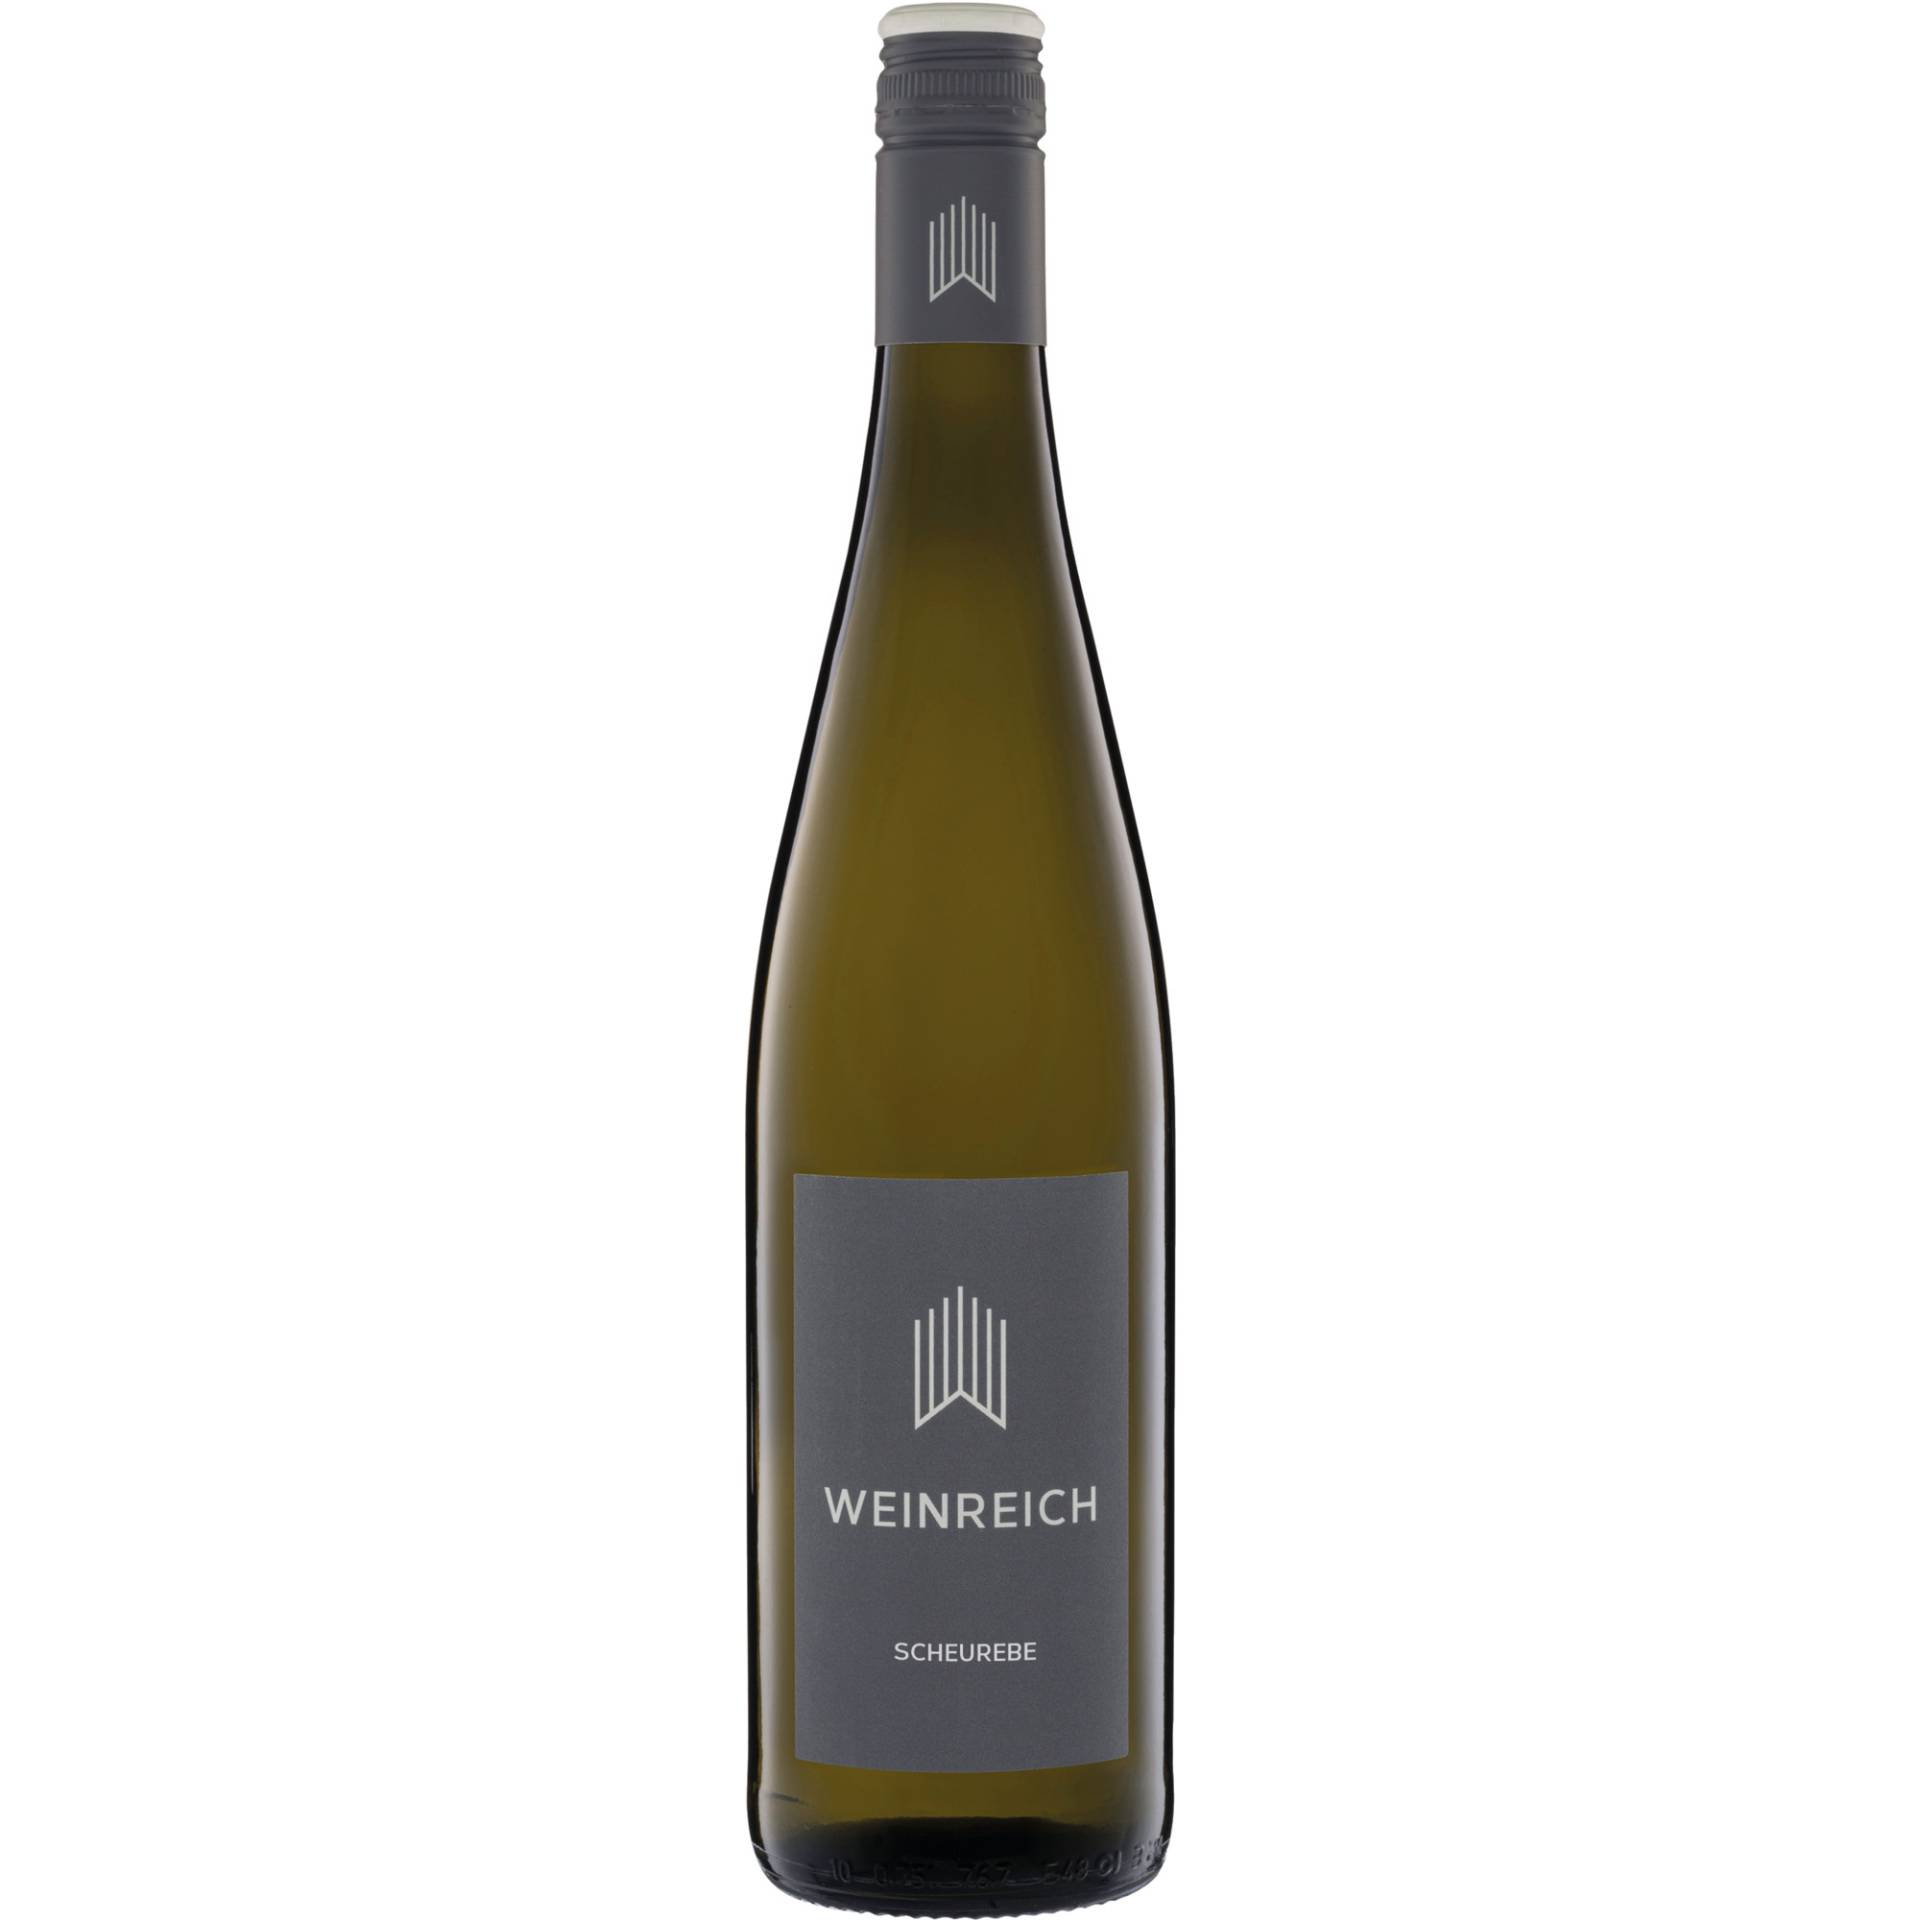 Weinreich Scheurebe, Trocken, Rheinhessen, Rheinhessen, 2021, Weißwein von Weingut Weinreich, D - 67595 Bechtheim